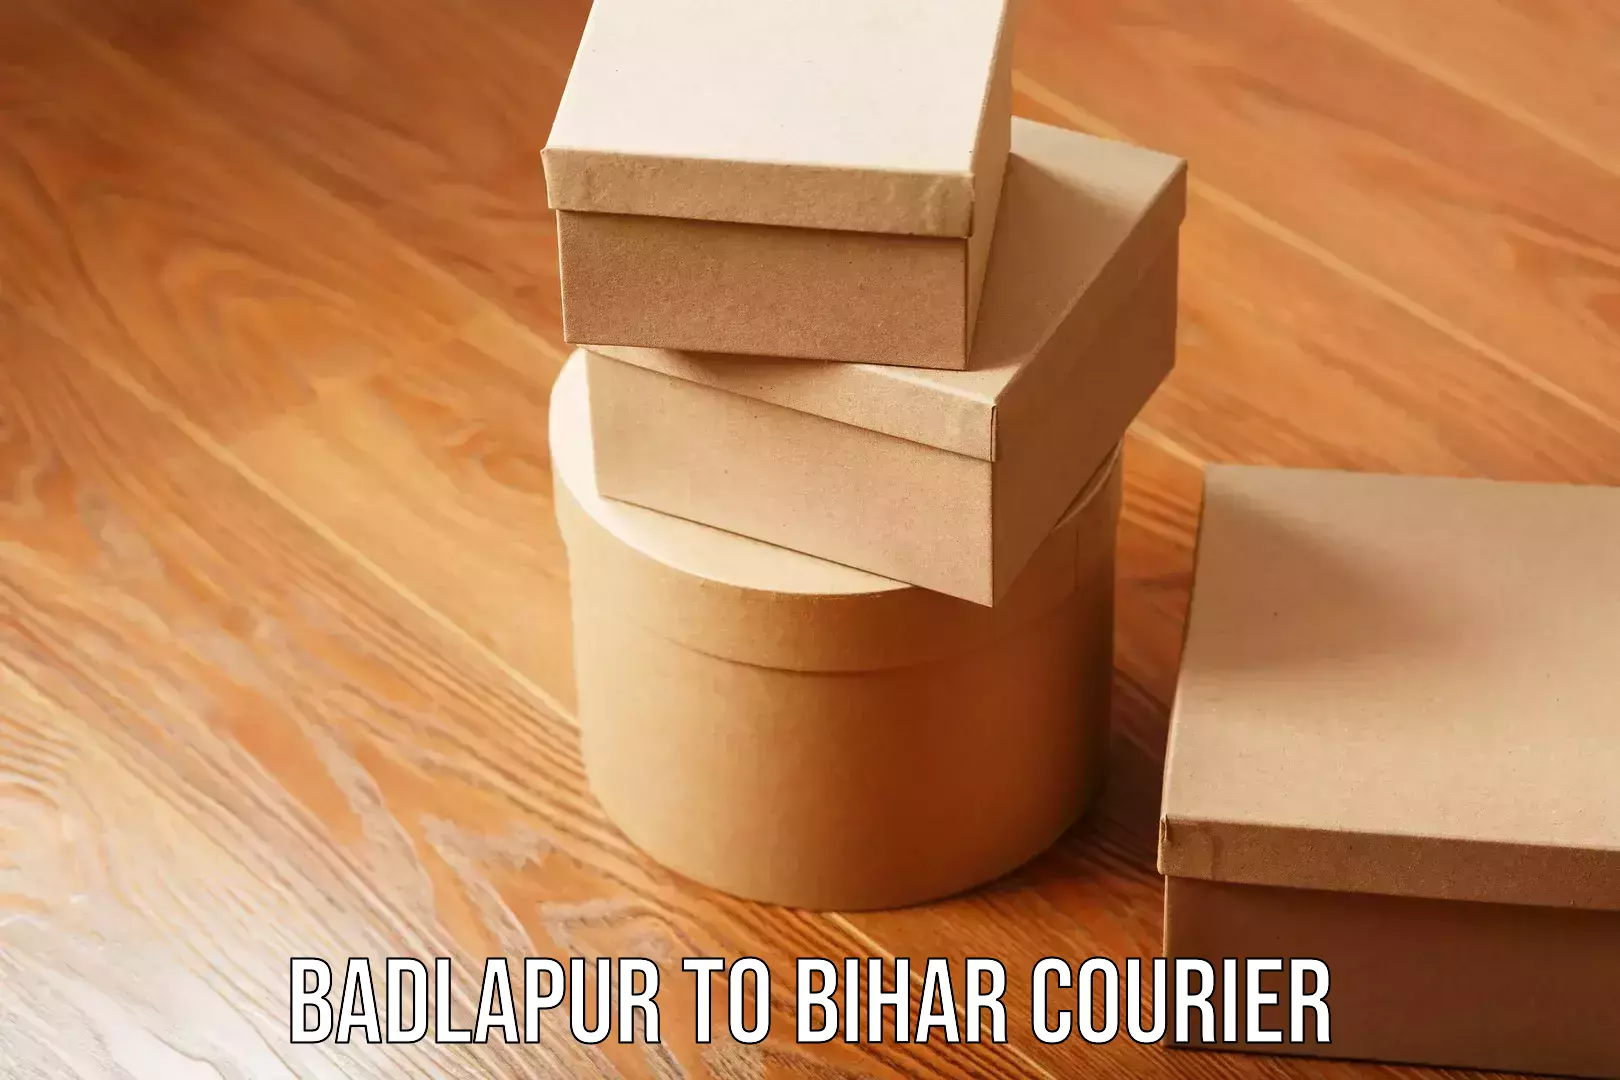 Digital courier platforms Badlapur to IIIT Bhagalpur